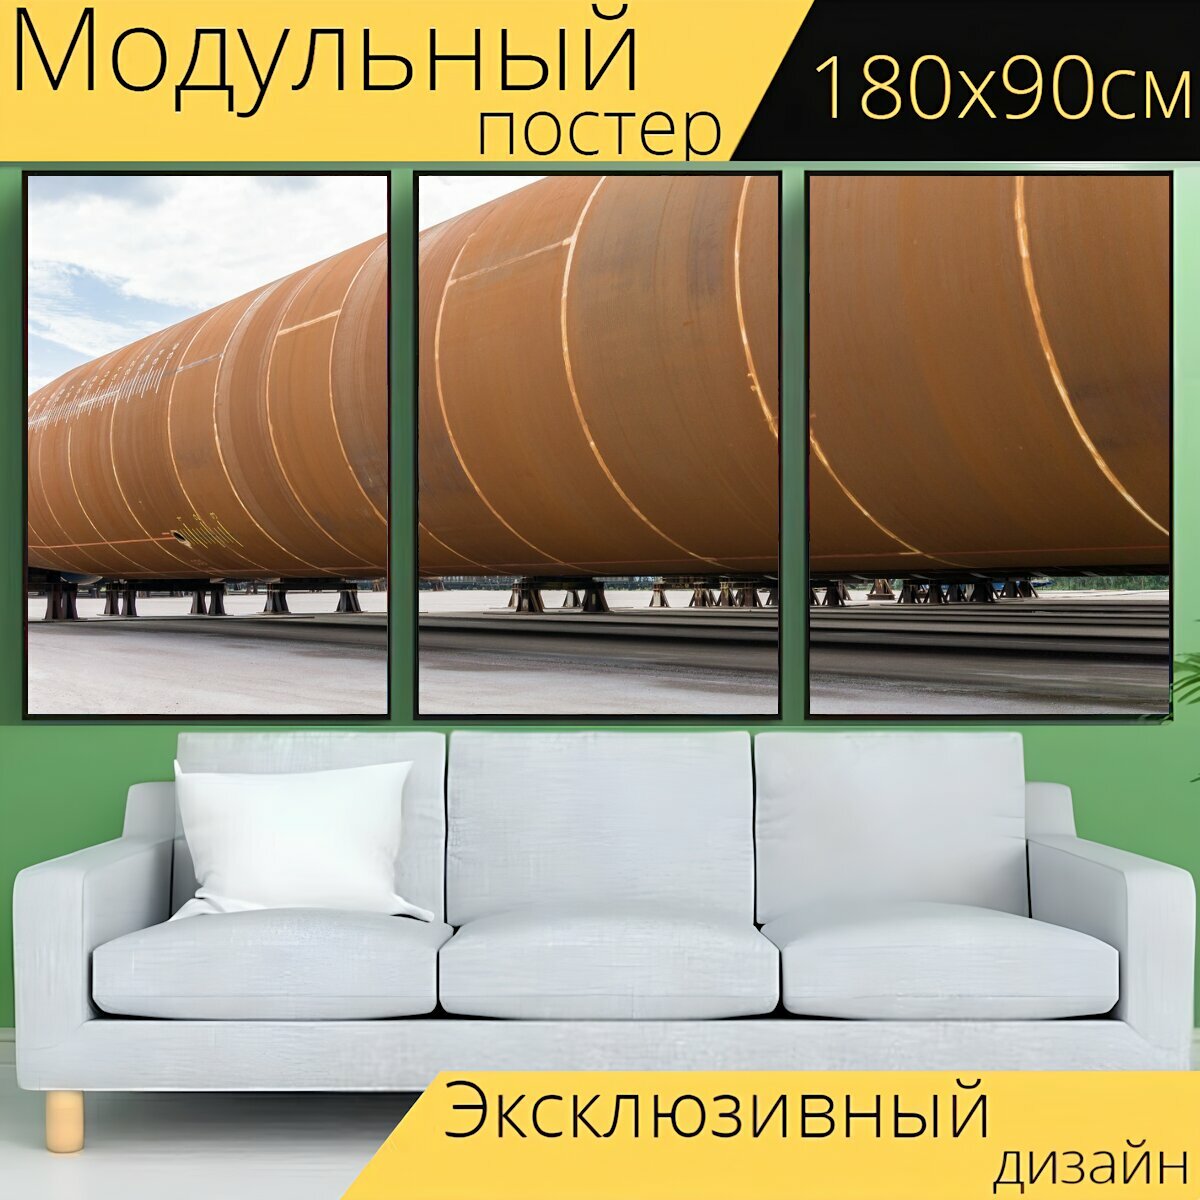 Модульный постер "Трубопровод, железо, украл" 180 x 90 см. для интерьера